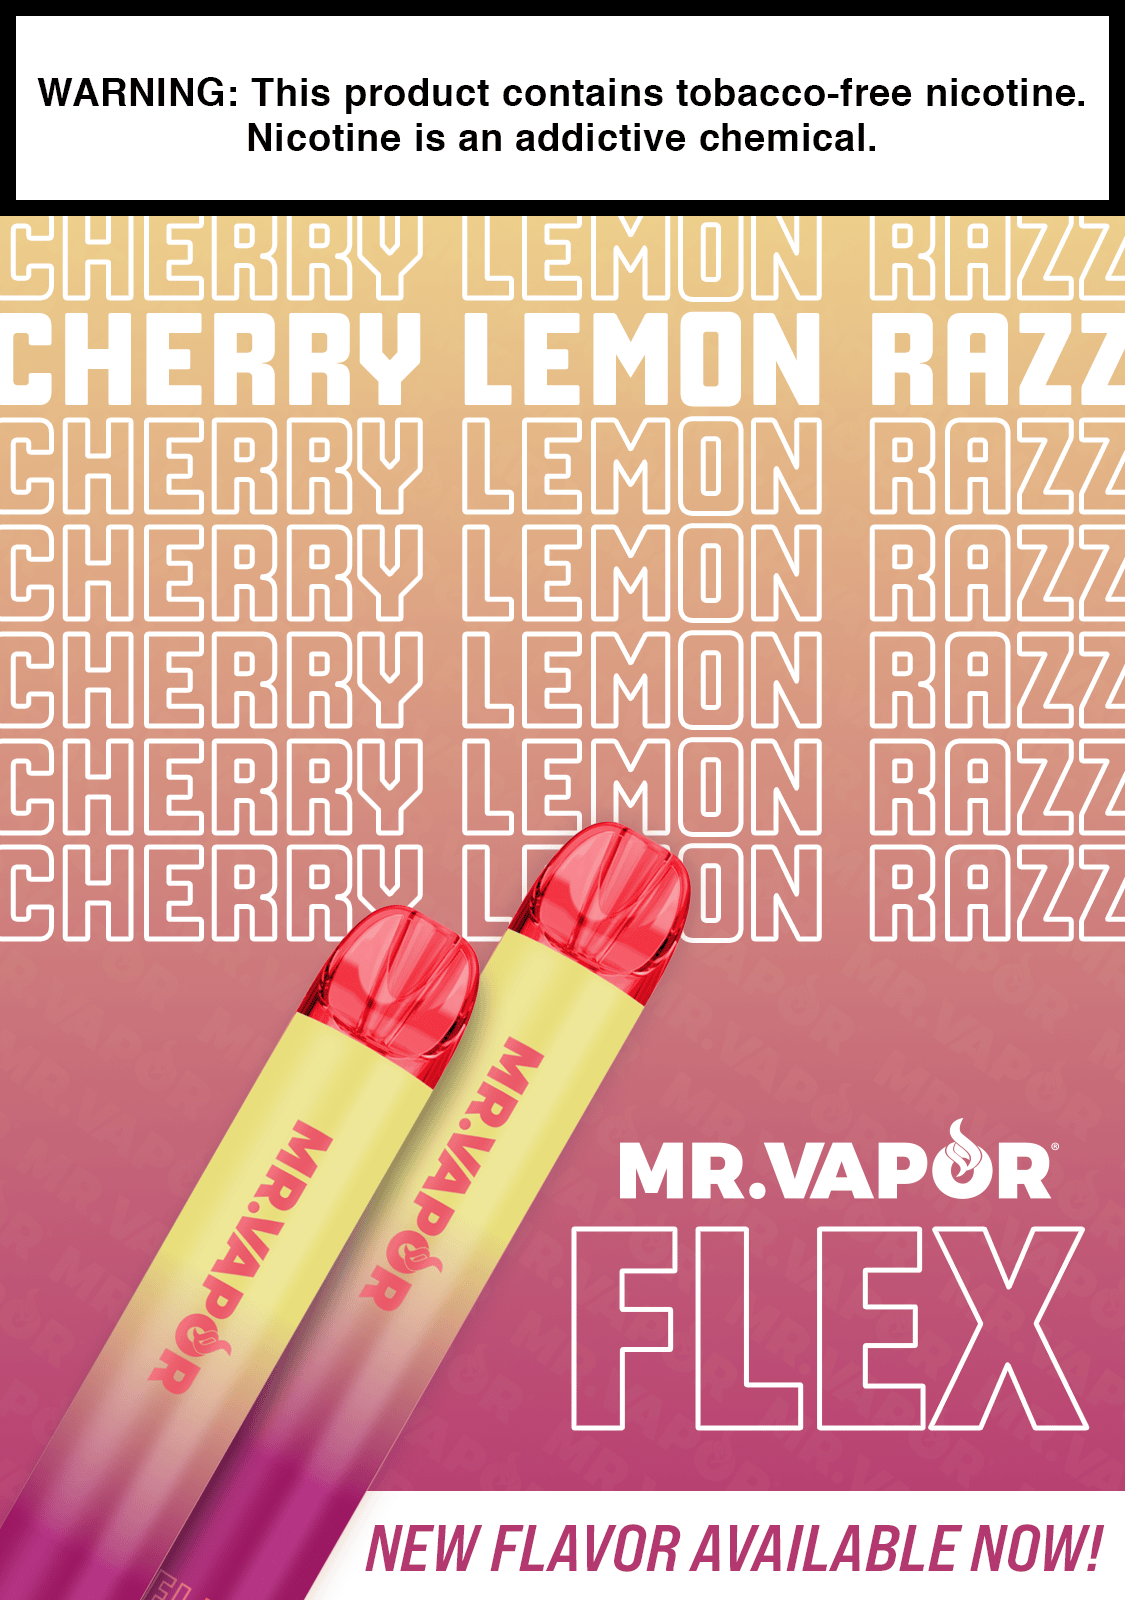 Cherry Lemon Razz MB